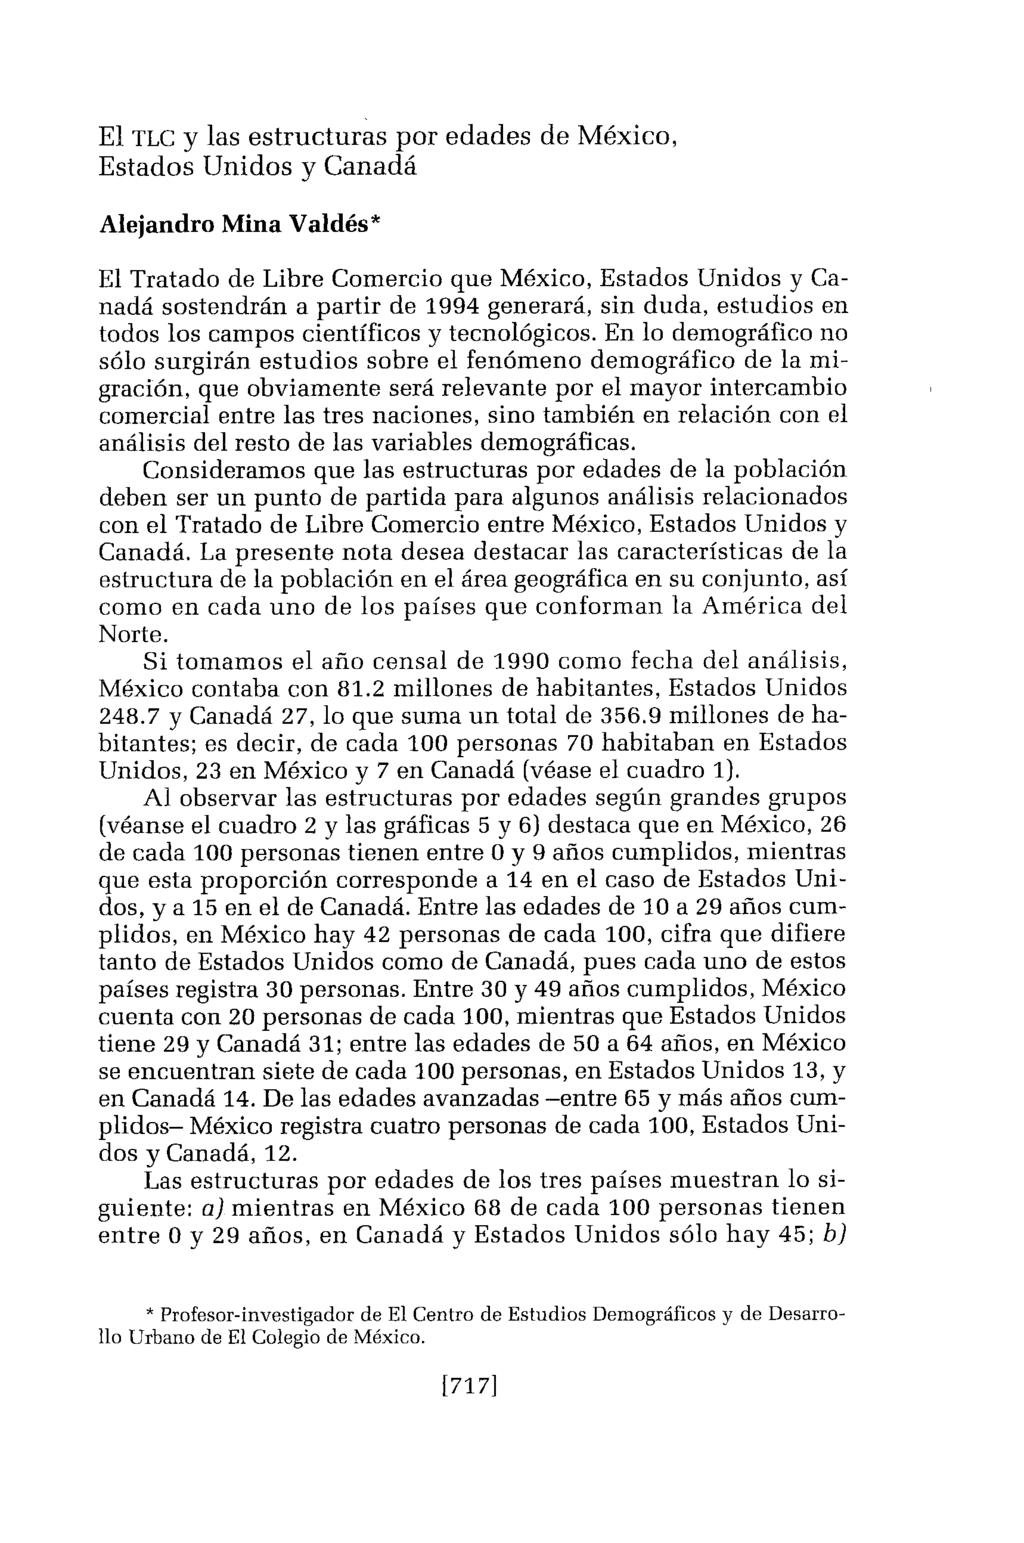 El TLC y las estructuras por edades de México, Estados Unidos y Canadá Alejandro Mina Valdés* El Tratado de Libre Comercio que México, Estados Unidos y Canadá sostendrán a partir de 1994 generará,